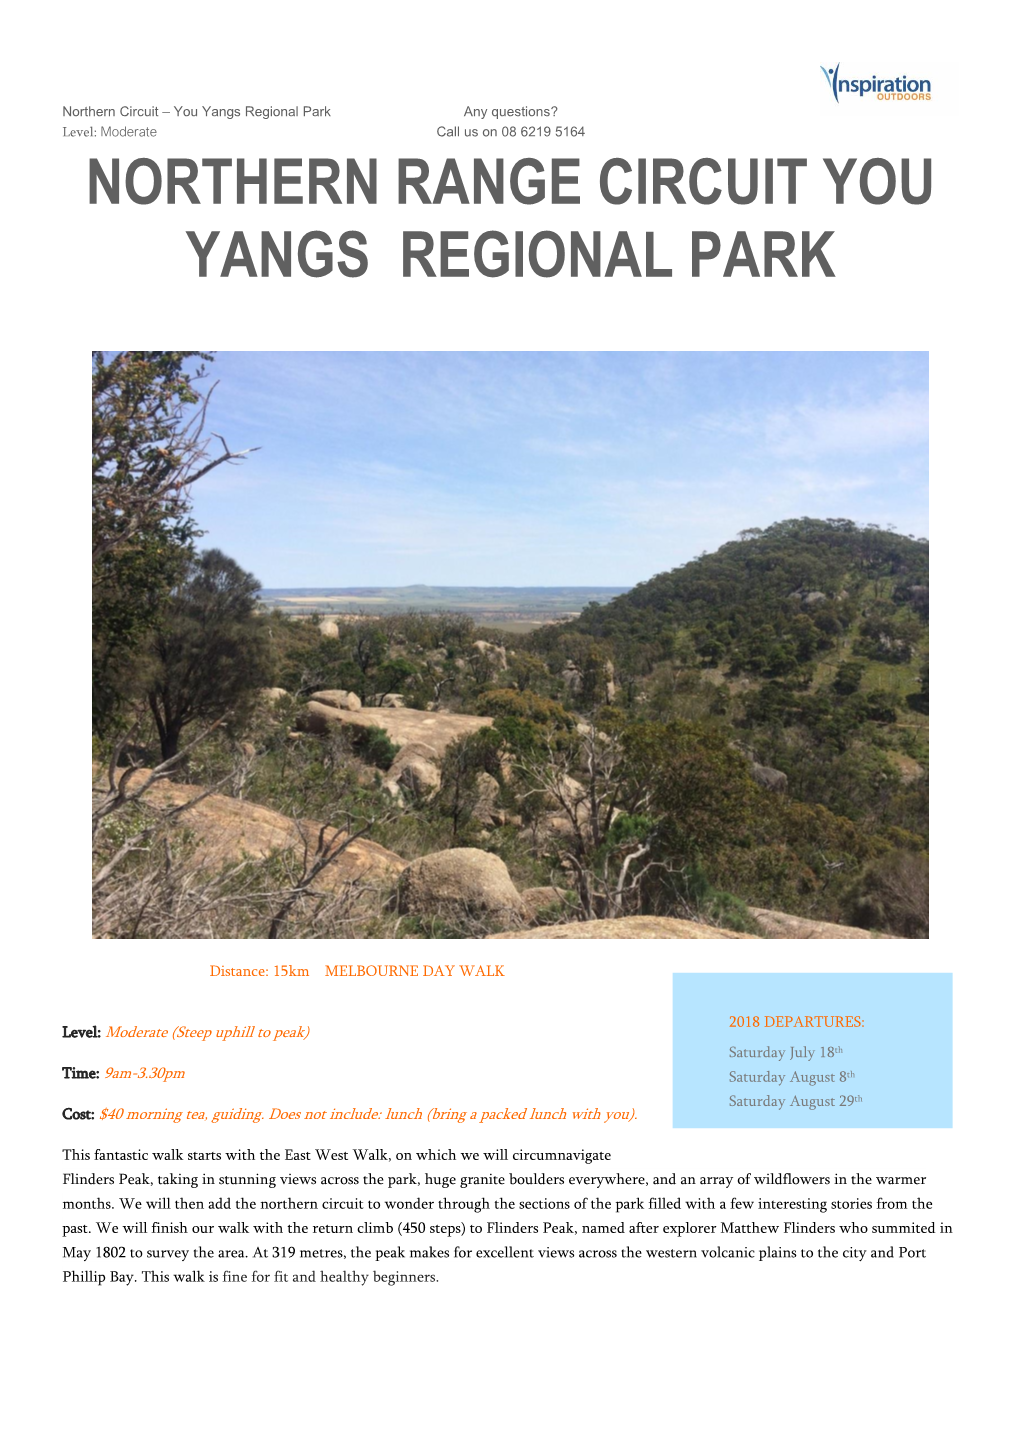 Northern Range Circuit You Yangs Regional Park